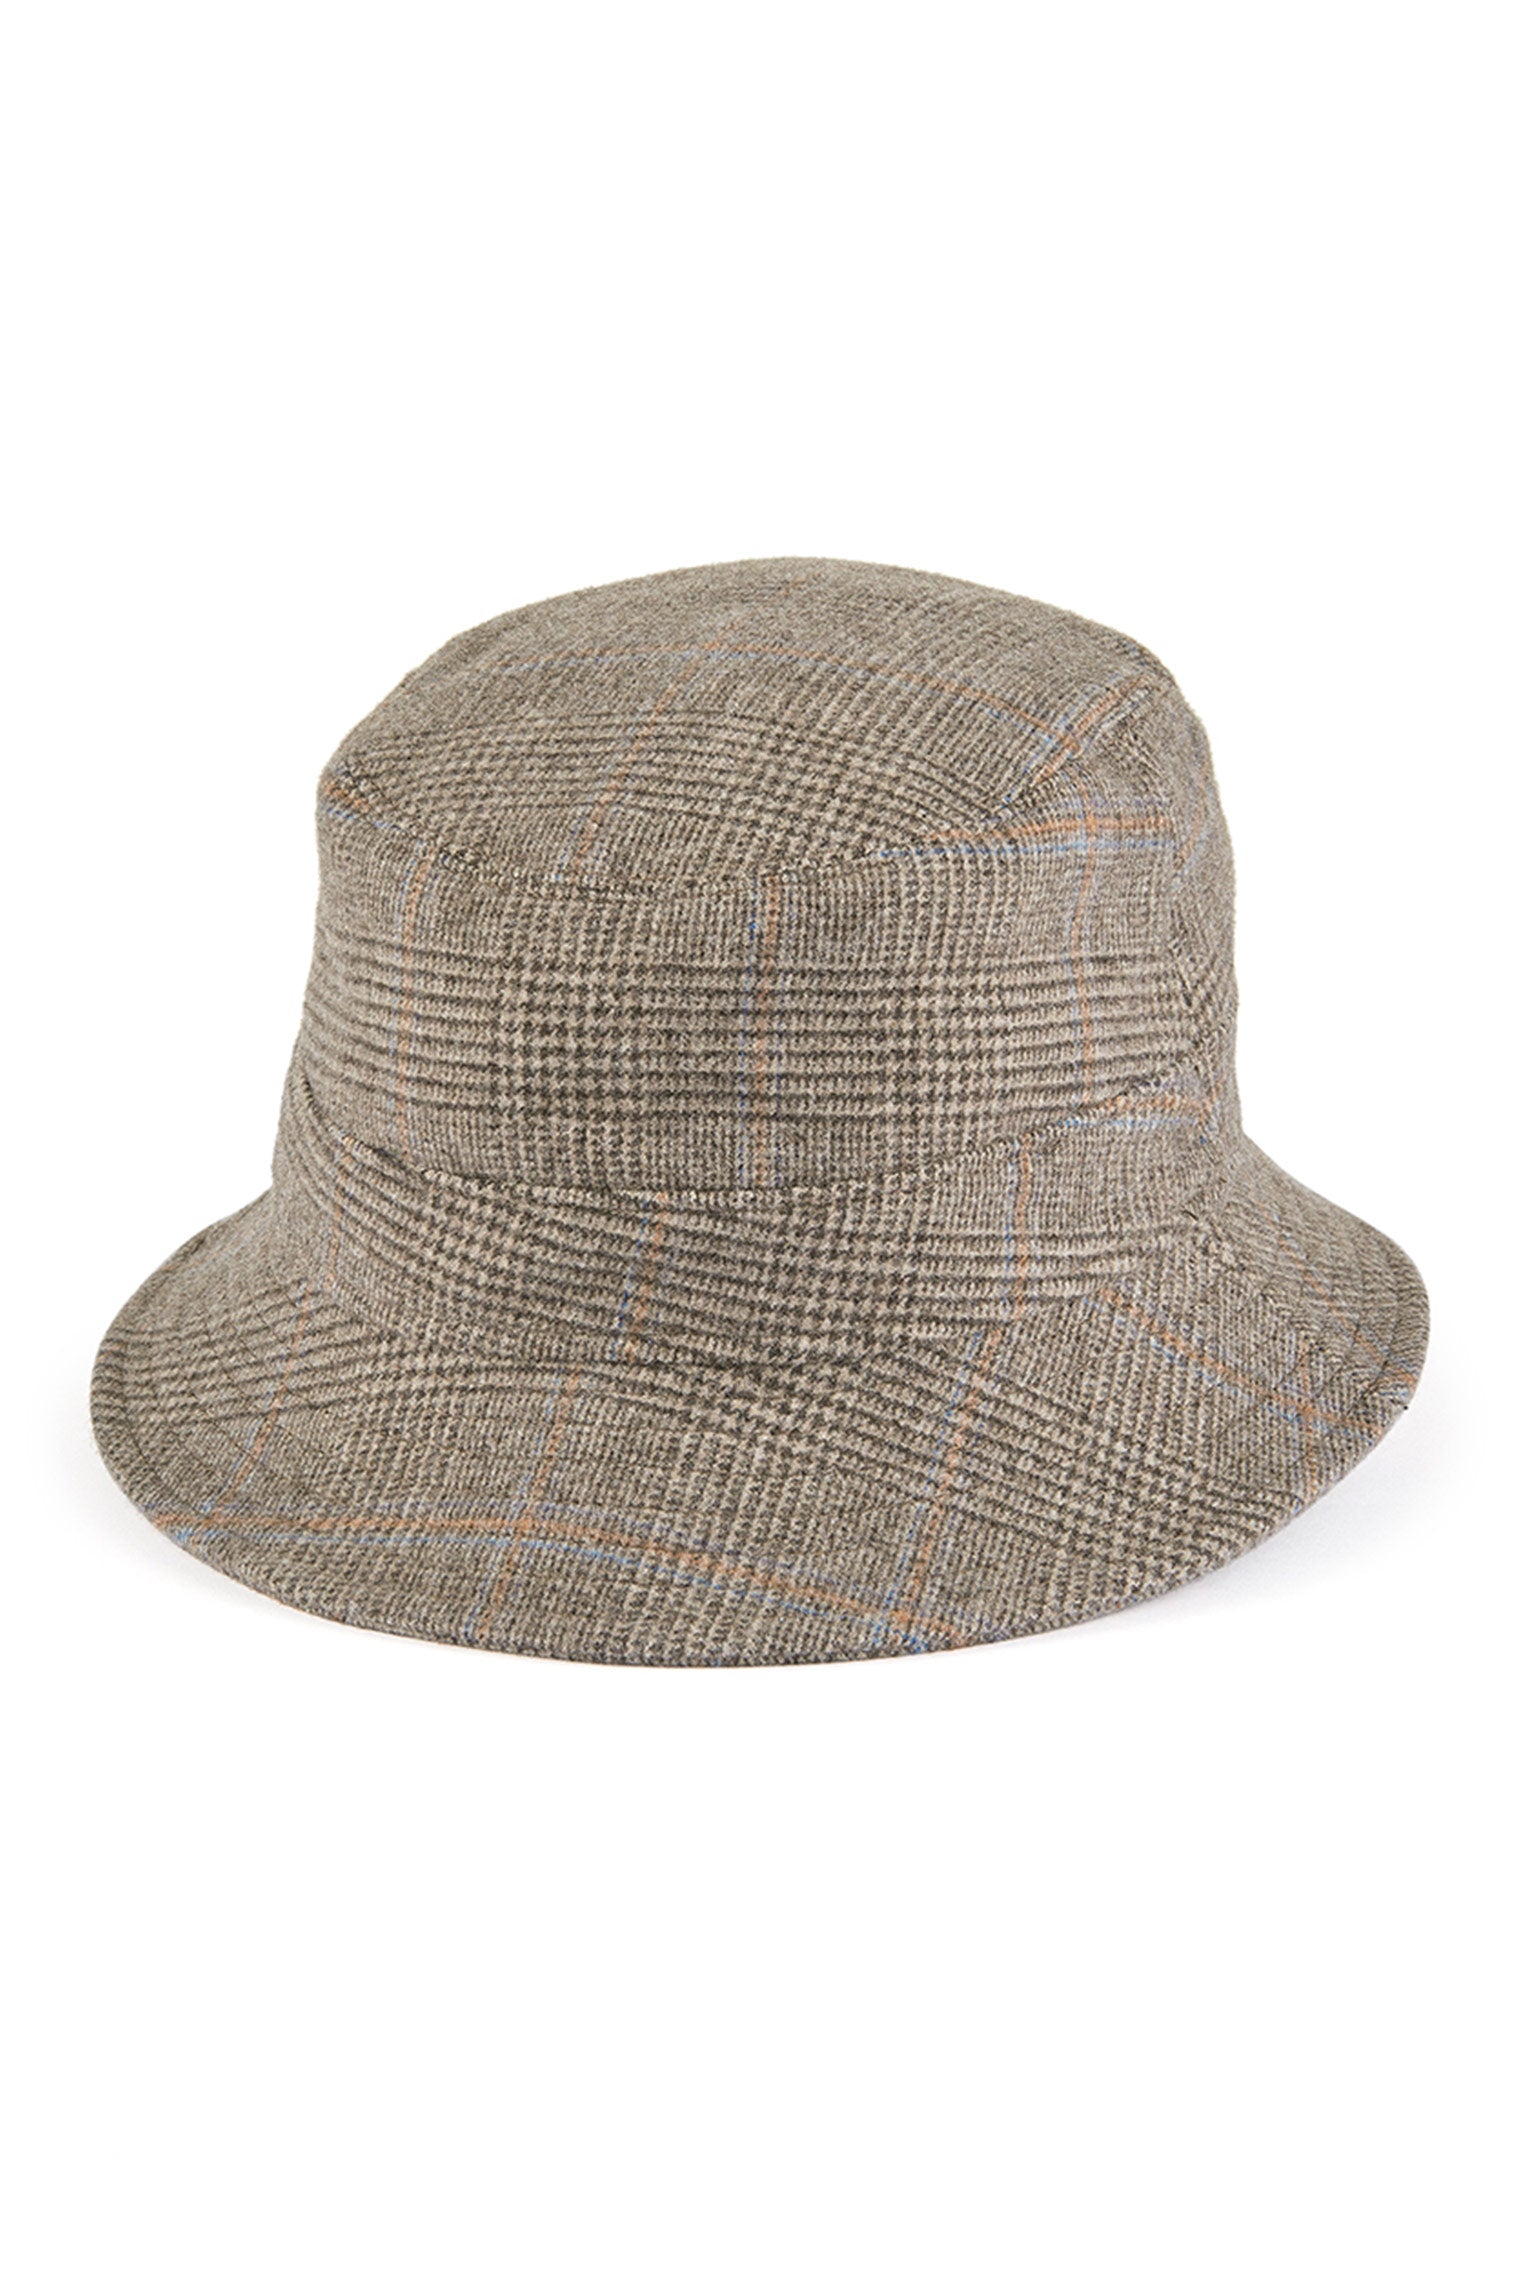 Escorial Wool Bucket Hat - Packable & Rollable Hats - Lock & Co. Hatters London UK